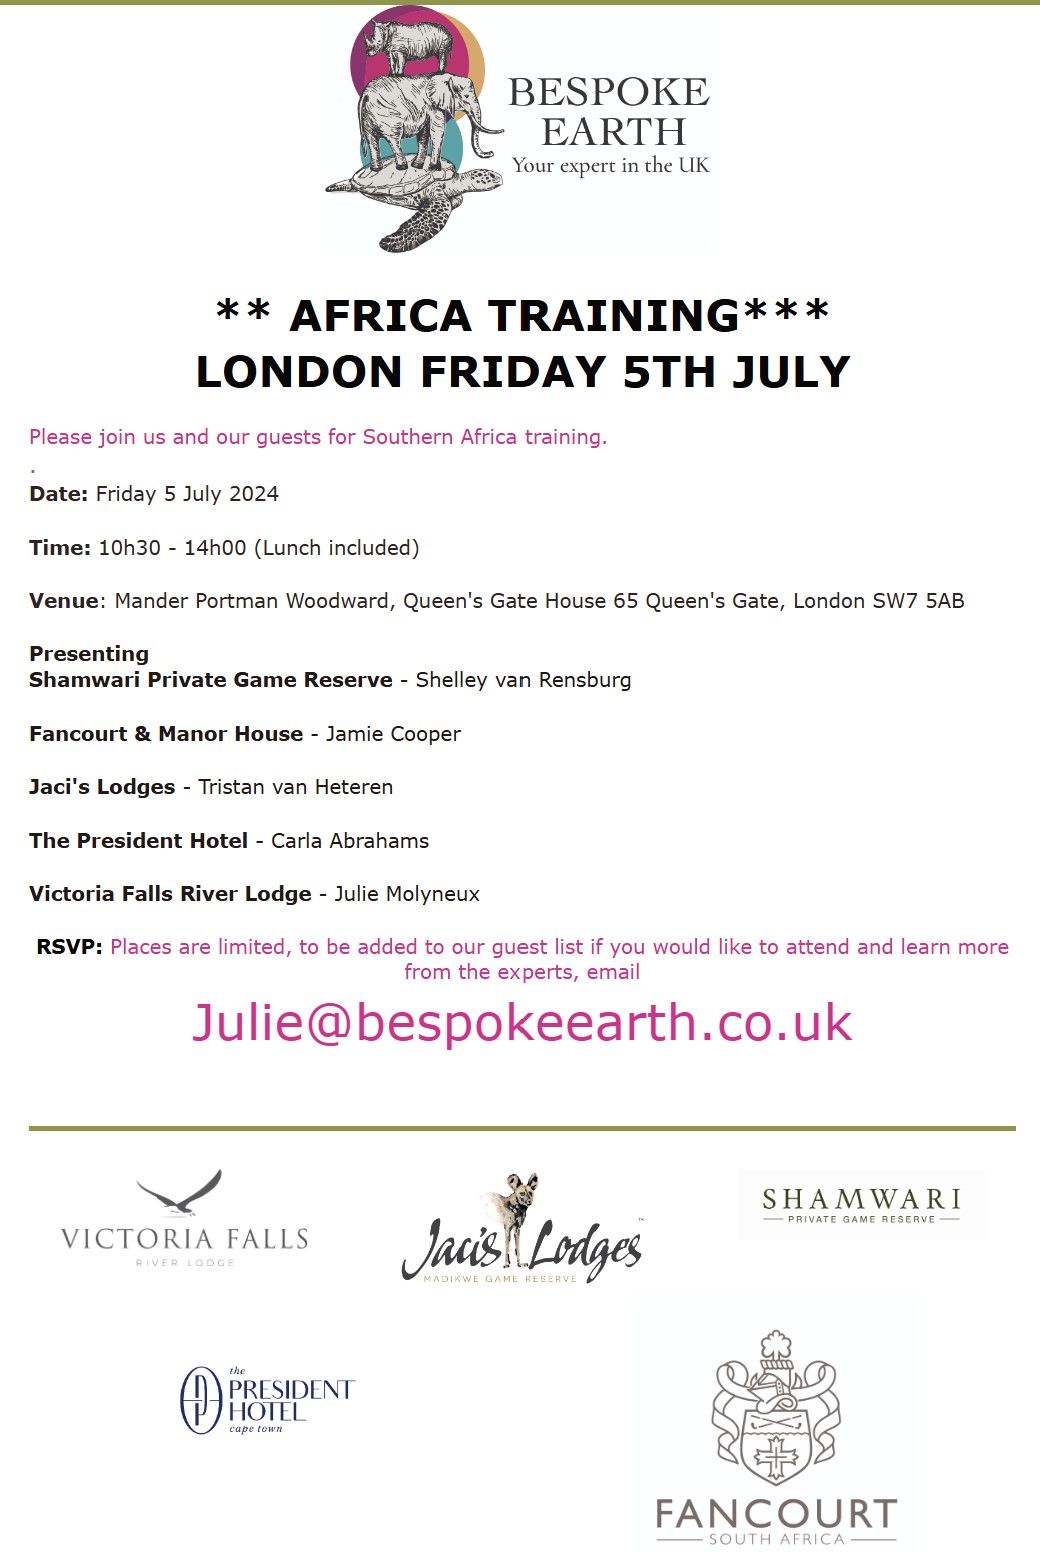 Africa Training Event